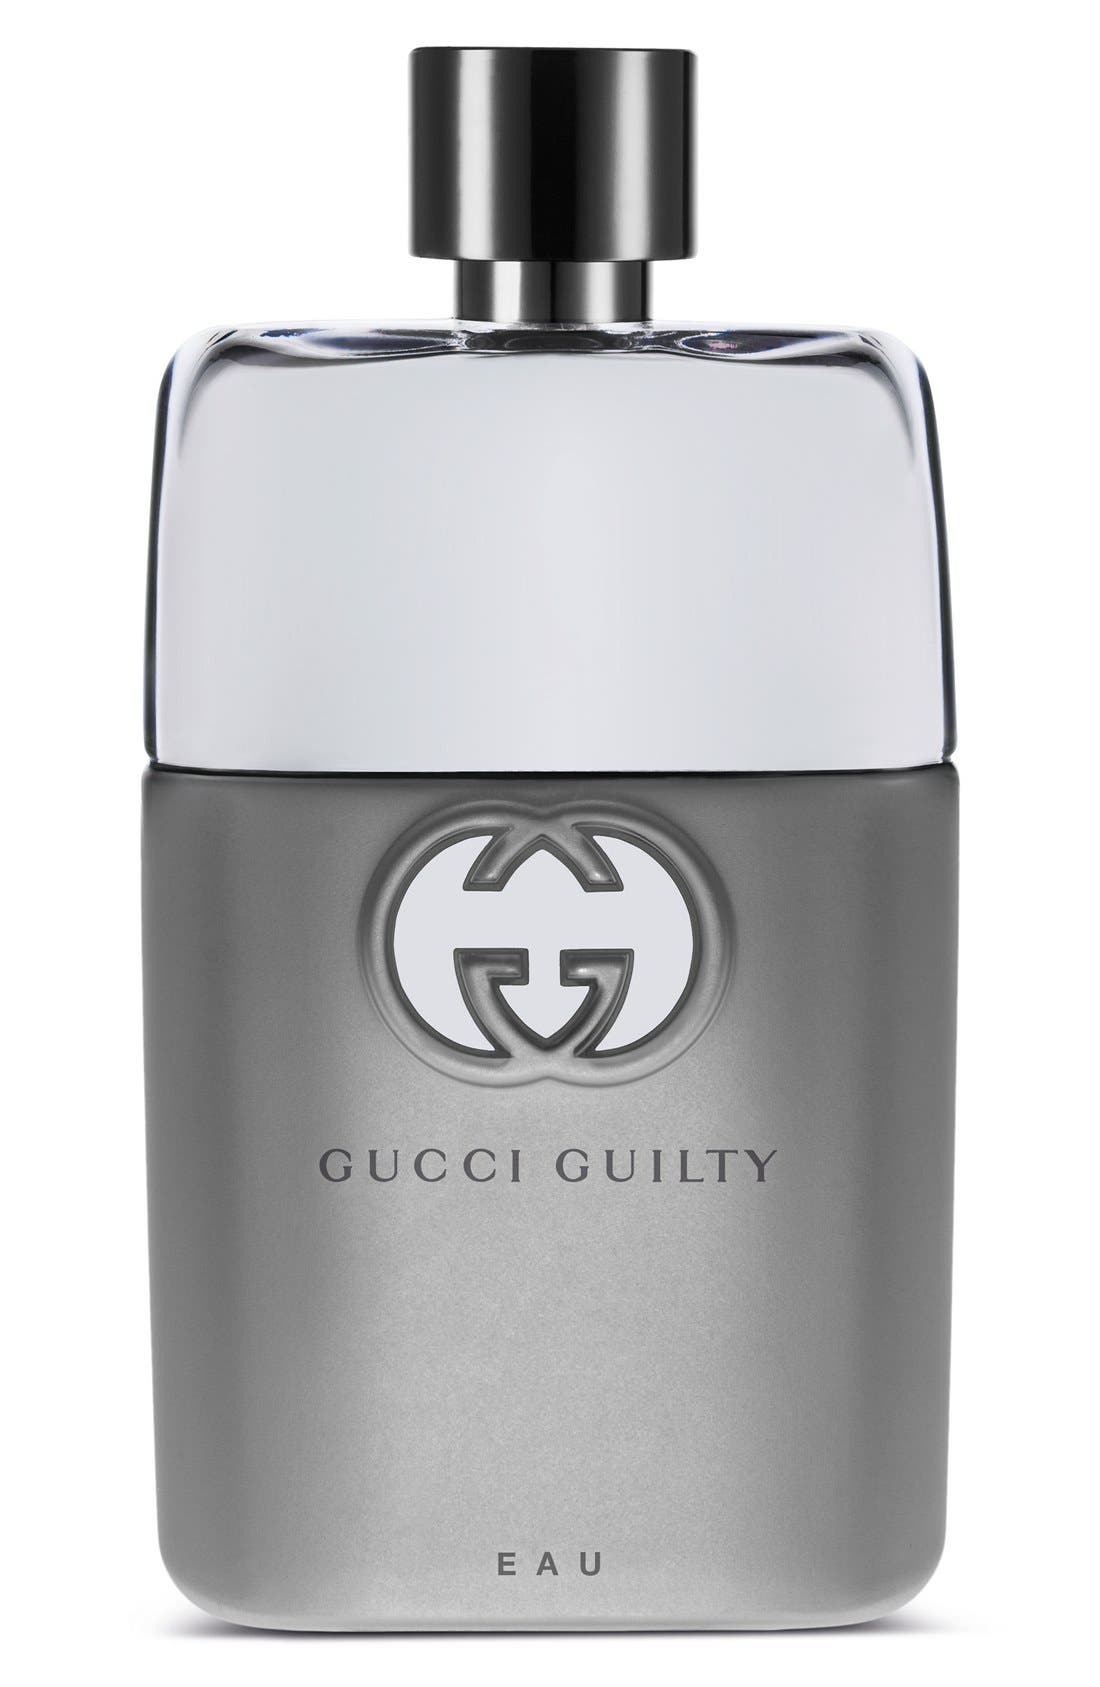 EAN 8005610328522 product image for Gucci Guilty Eau pour Homme Eau de Toilette, Size 3 Oz at Nordstrom | upcitemdb.com